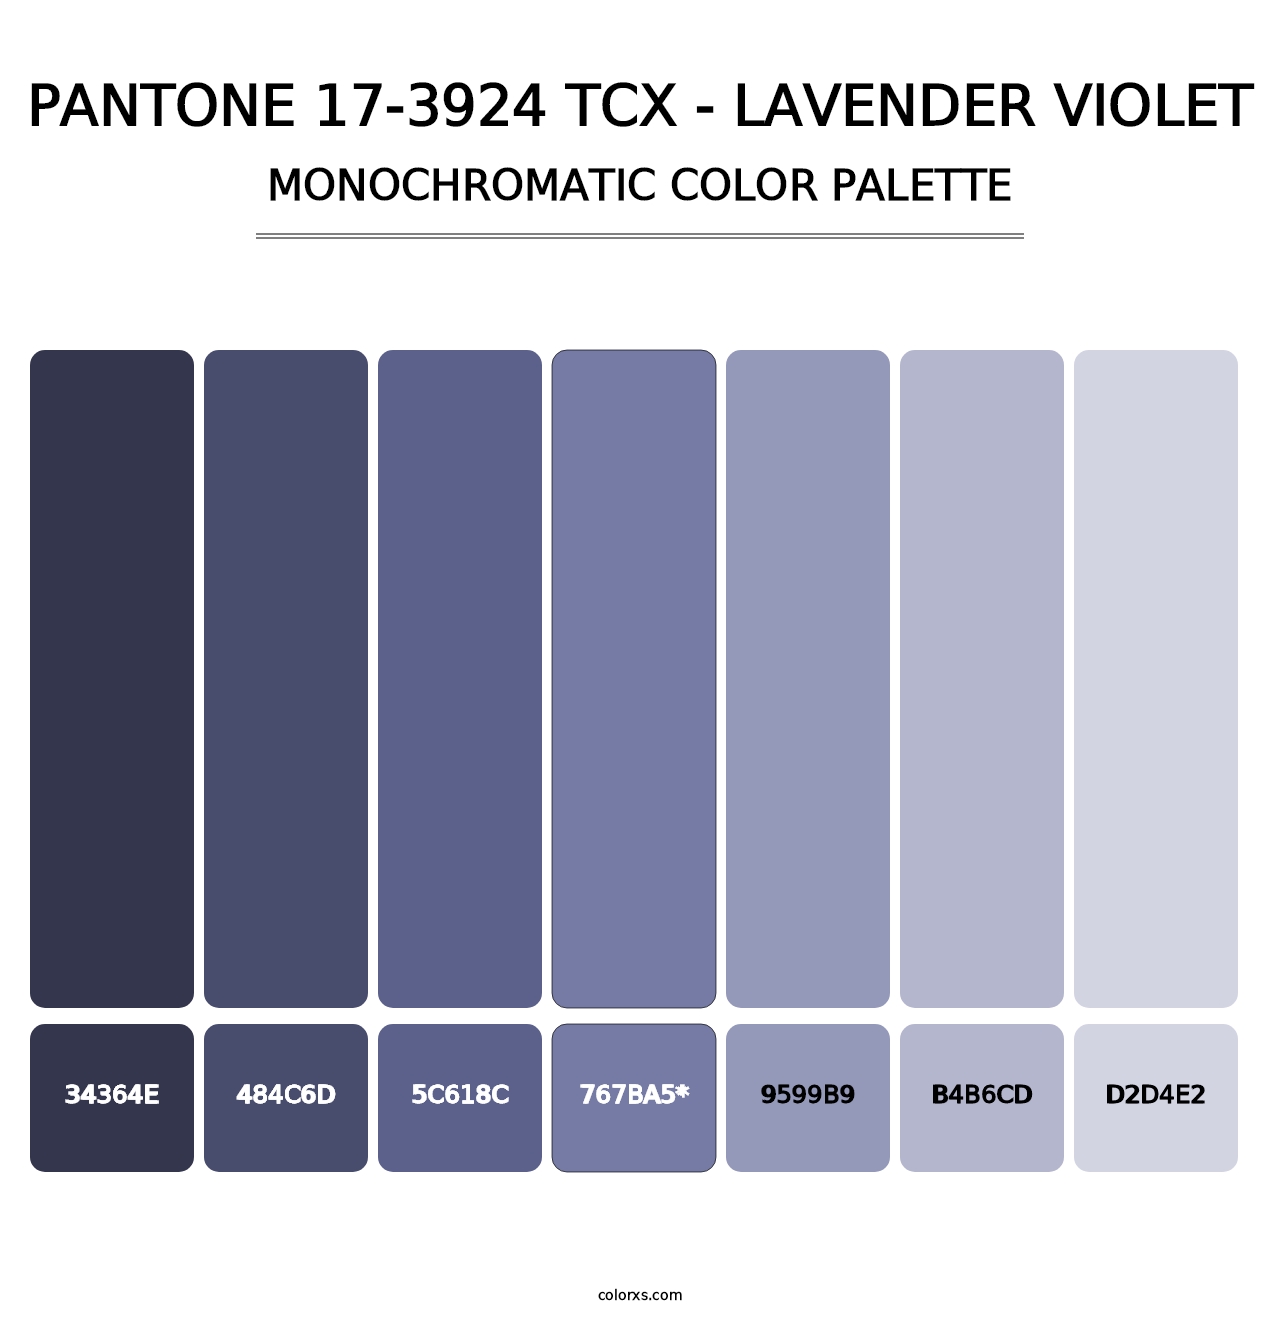 PANTONE 17-3924 TCX - Lavender Violet - Monochromatic Color Palette